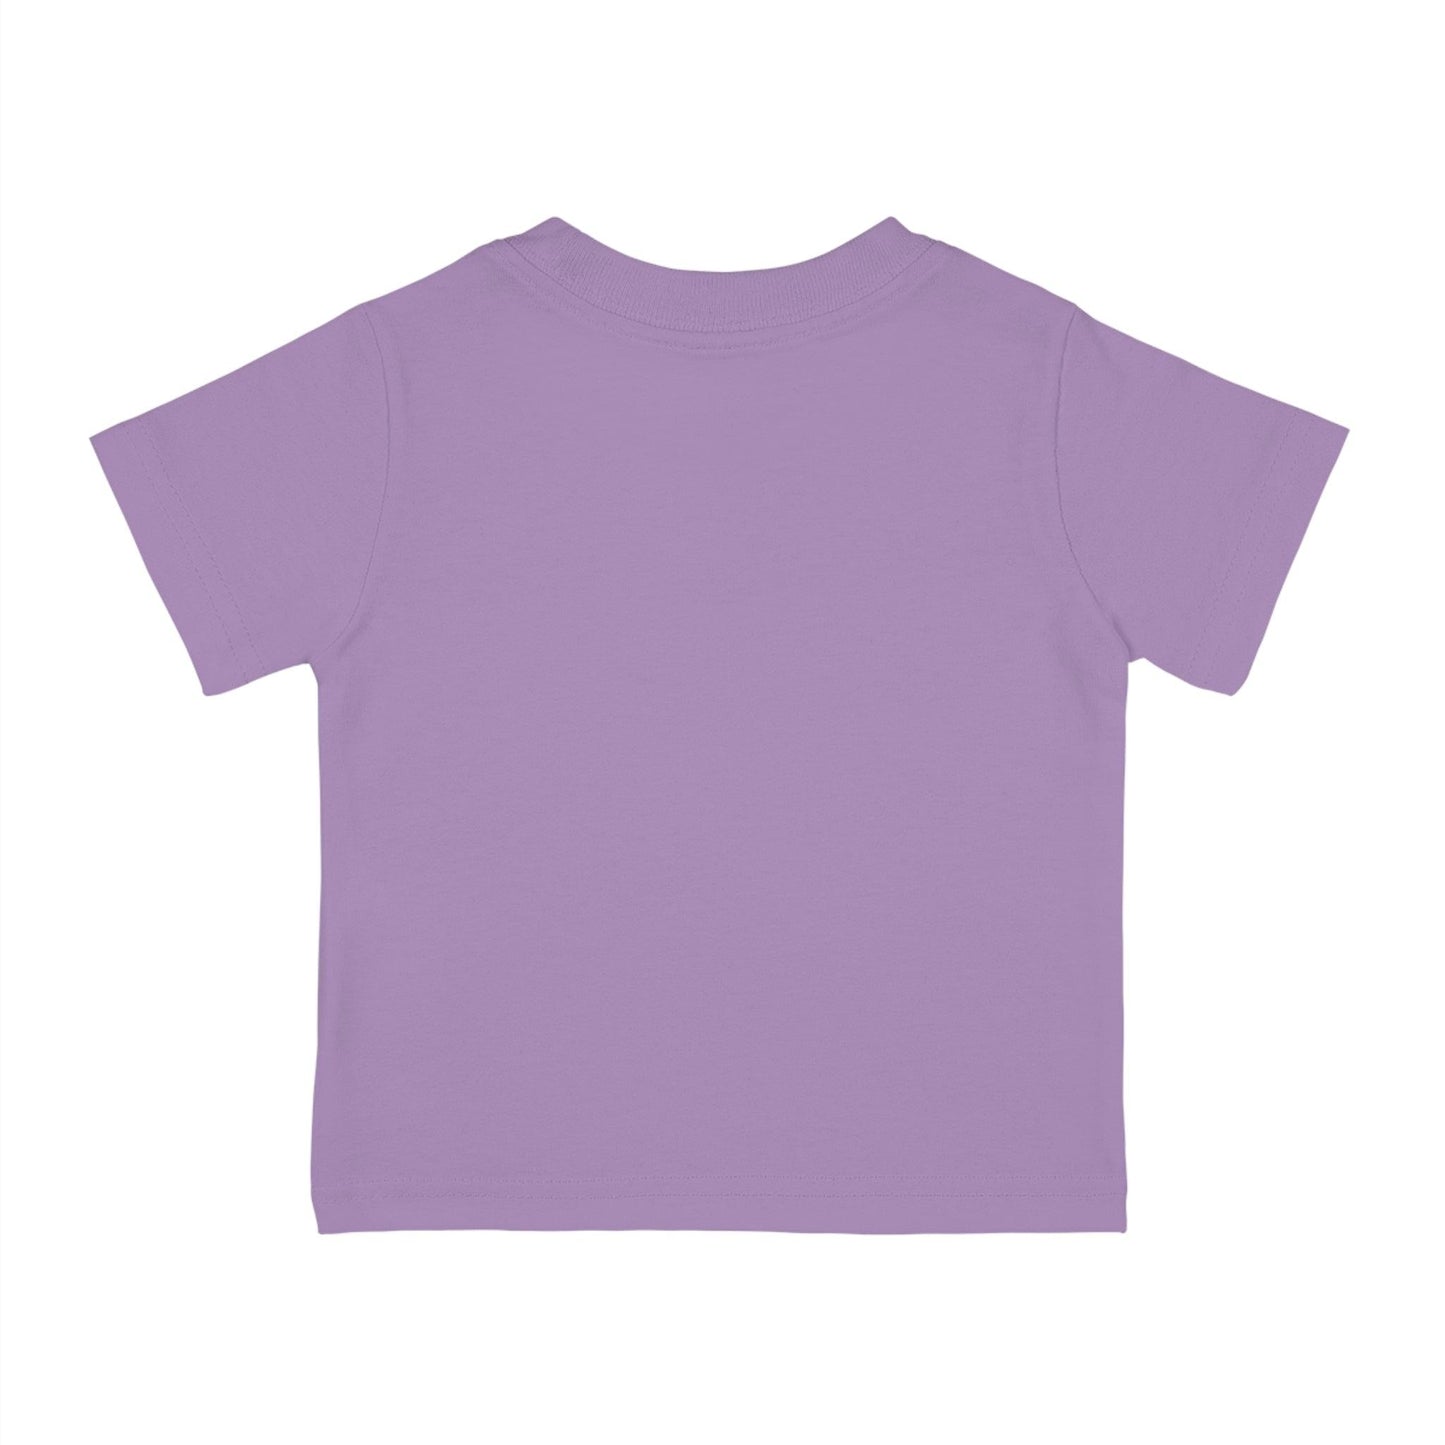 Daddy's Valentine - Valentine shirt for Kids - Giftsmojo